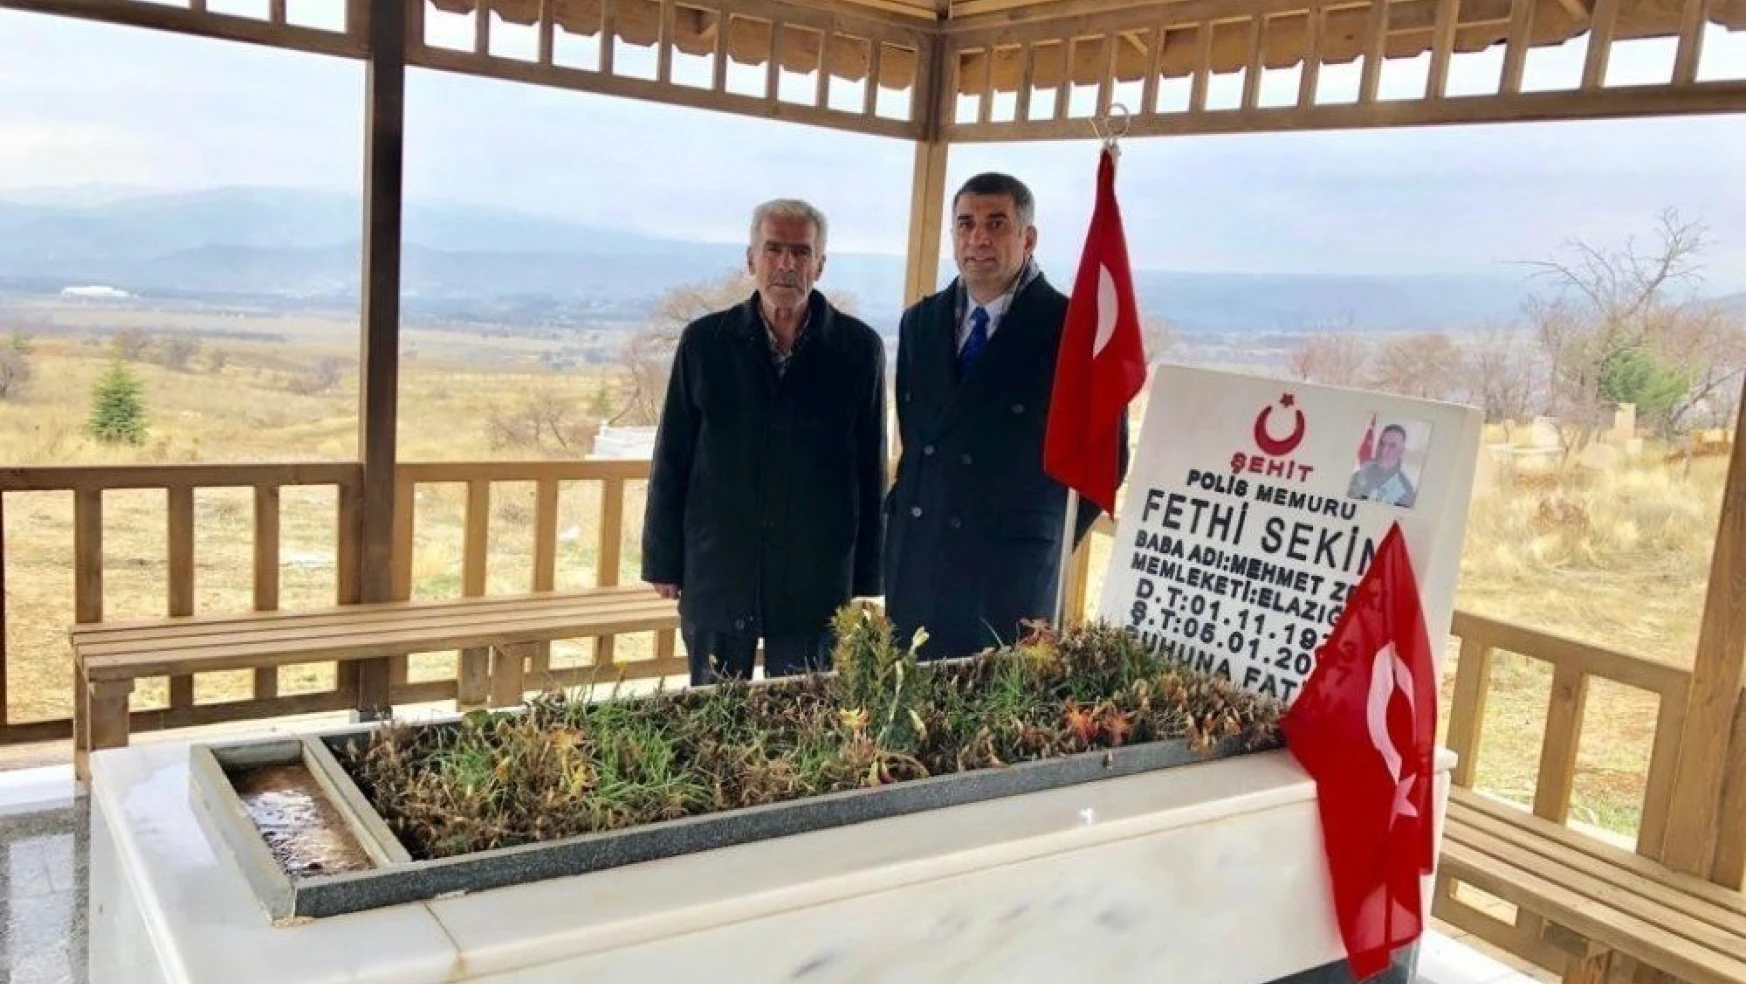 Milletvekili Gürsel Erol, Şehit Sekin'in Kabrini Ziyaret Etti